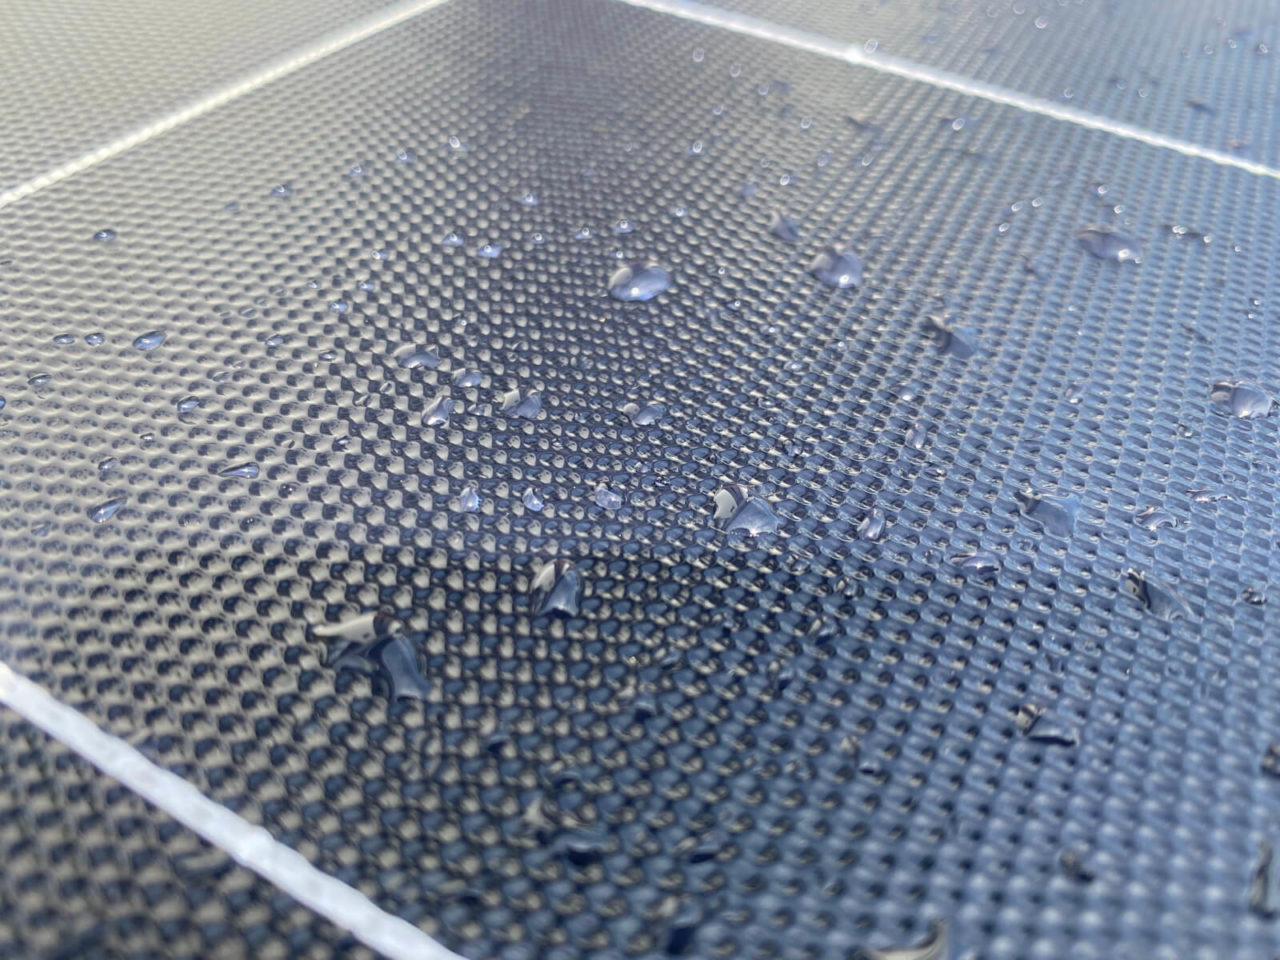 Jackery SolarSaga 100W Solar Panel Test - Wassertropfen auf den Solarzellen